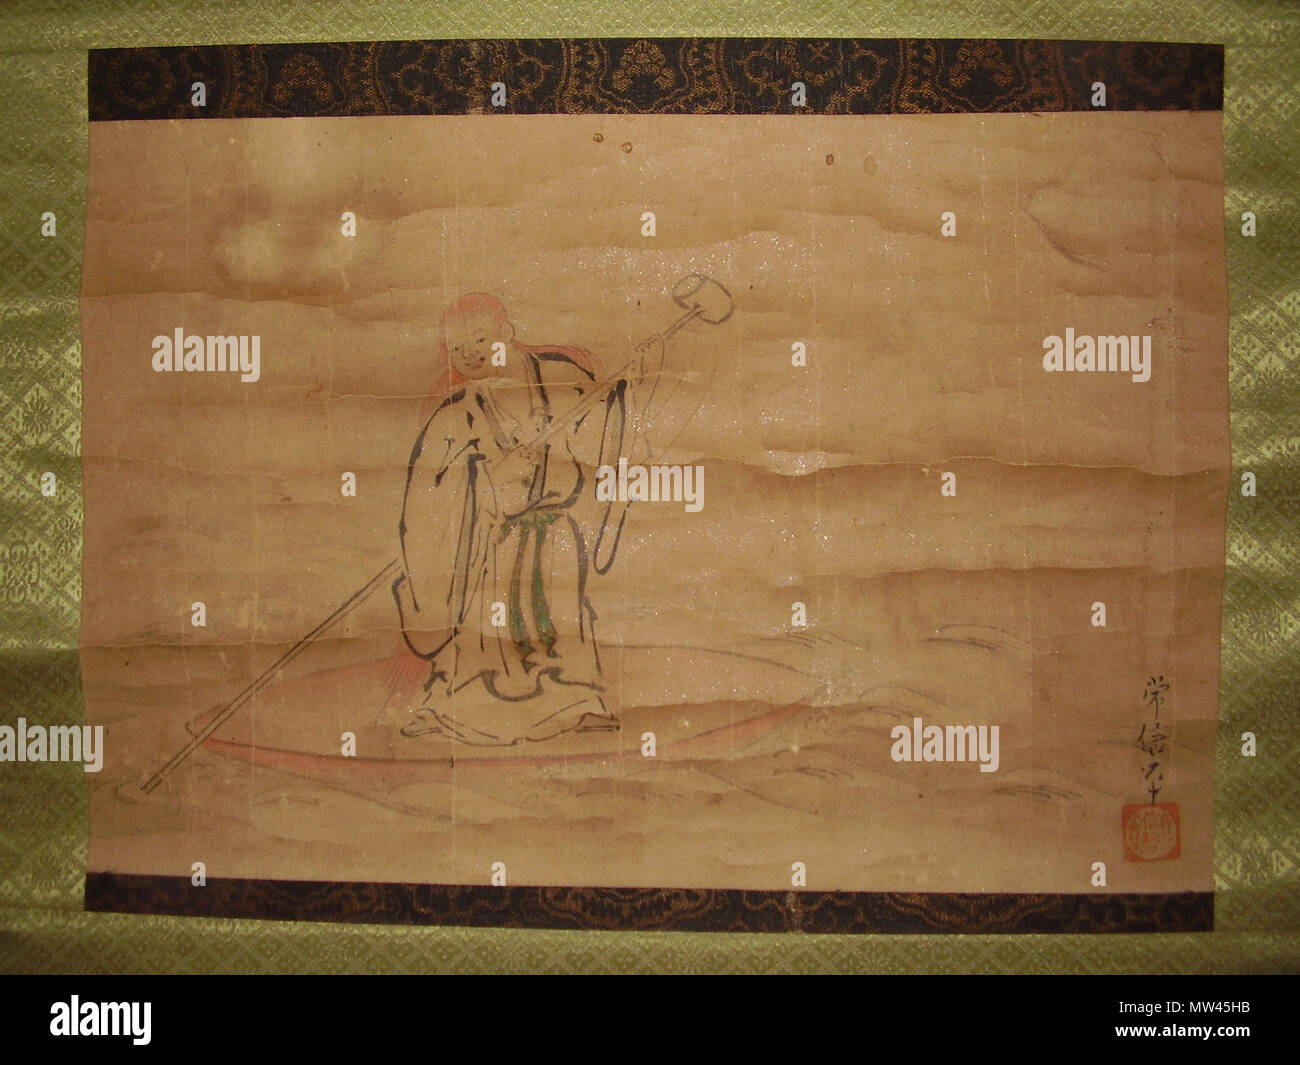 . Englisch: Malerei eines Shōjō stehend auf einer übergroßen Untertasse Stil willen Schale, mit einem sehr langstieligen Kelle Willen durch ein Meer von Was kann entweder Sake oder Wasser sein. Malerei; sumi Tinte und Wasserfarben (?) auf Papier mit (was zu sein scheinen) feine Flecke des Mica. Unterzeichnet & wie von Kano Tsunenobu (1636-1713) versiegelt; Unbestätigt, plausibel (Forschung nötig!). Die Malerei ist lose' Kano Schule', & (spätestens) 19. Jahrhundert oder früher (zu den akkreditierten Künstler Lebensdauer). Private Sammlung; fam. Wittig et Cie. Referenz geschossen - Scans anstehende Note-betreuer zu Mediawiki; schrieb ich eine komplette desc Stockfoto